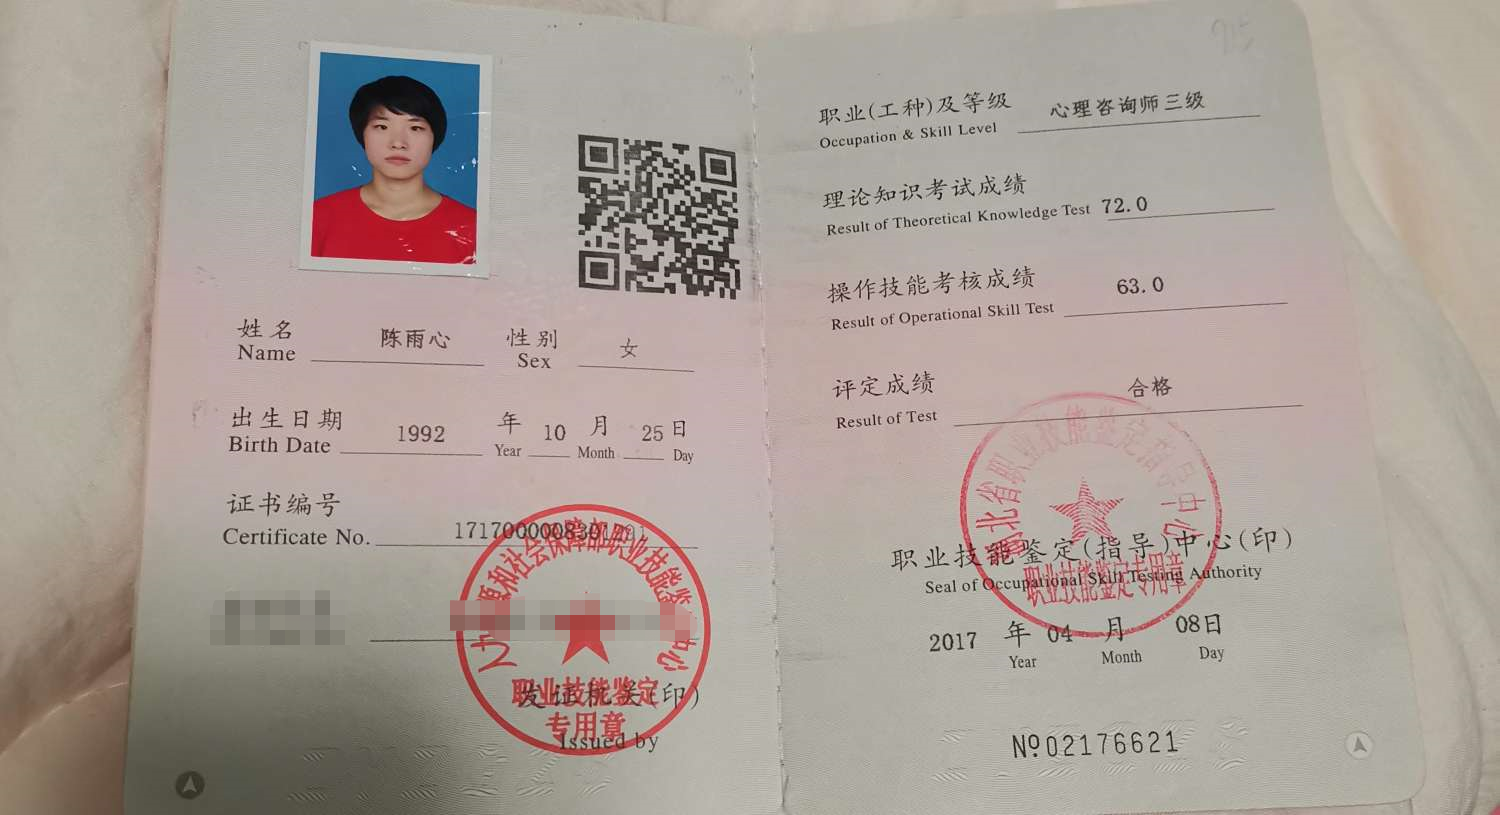 咨询师陈雨心的职业证书